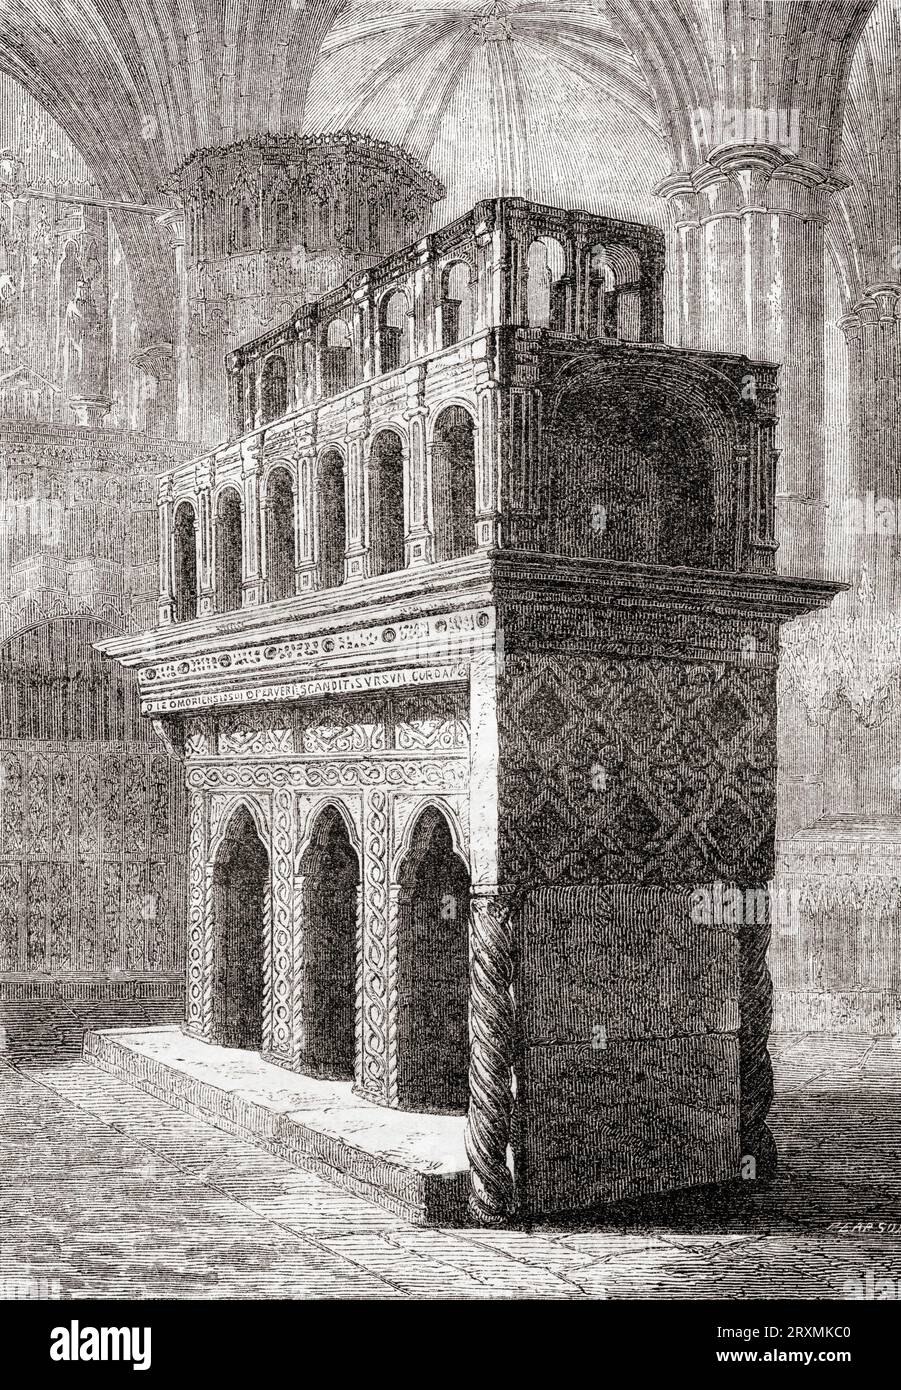 Il santuario di re Edoardo il Confessore, Abbazia di Westminster, Londra, Inghilterra. Da Cassell's Illustrated History of England, pubblicato nel 1857. Foto Stock